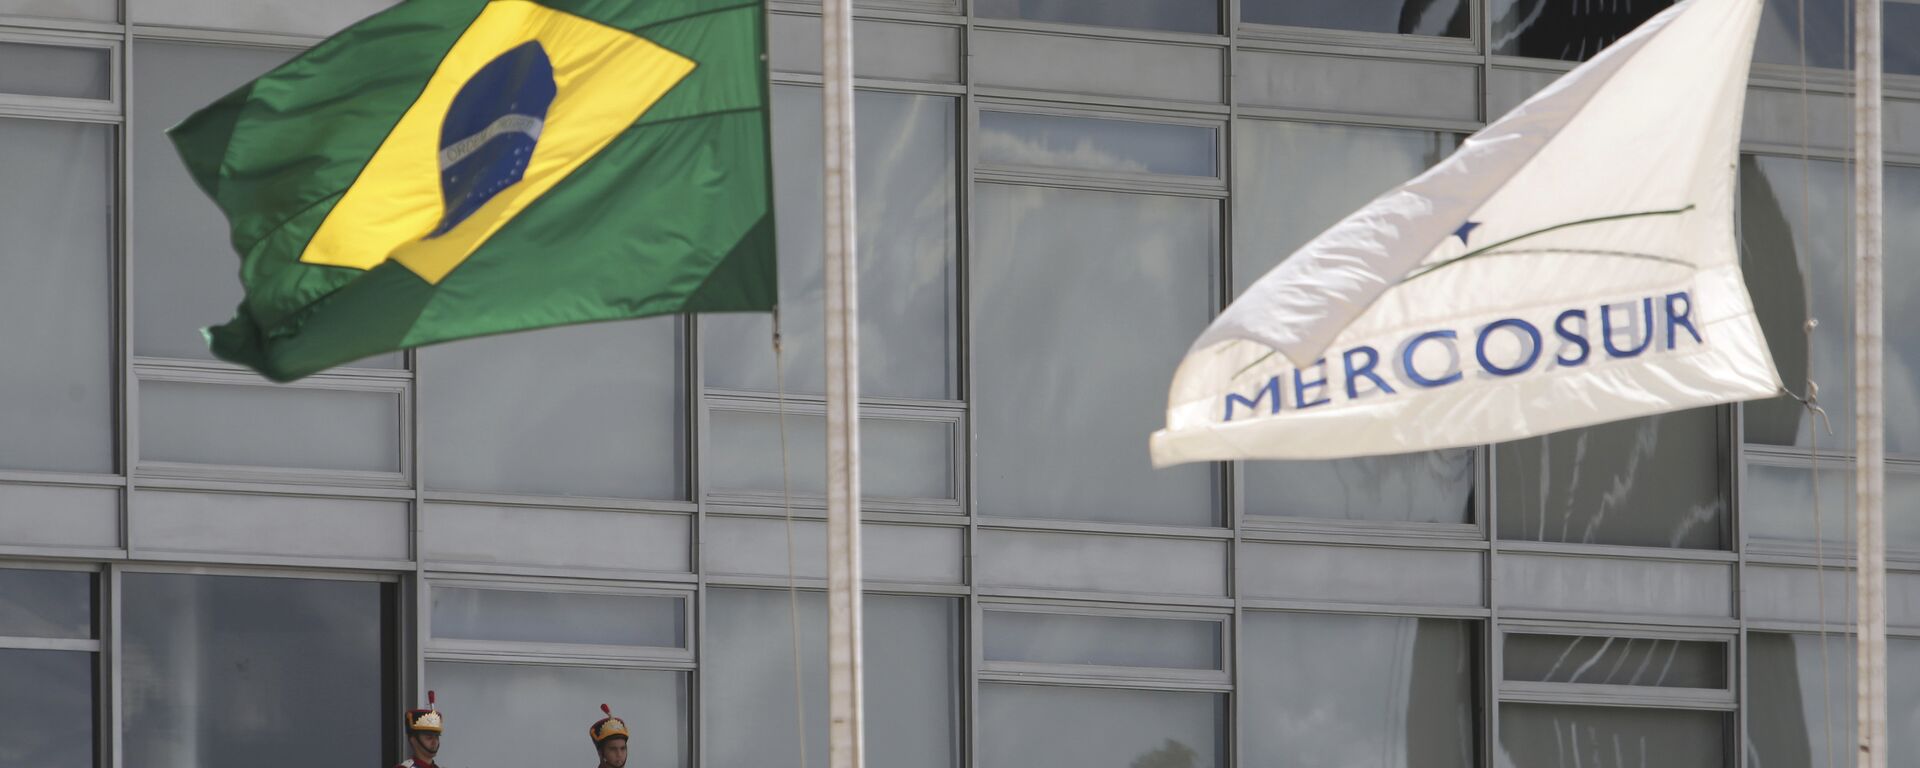 Bandeiras do Brasil e do Mercosul (foto de arquivo) - Sputnik Brasil, 1920, 09.06.2021